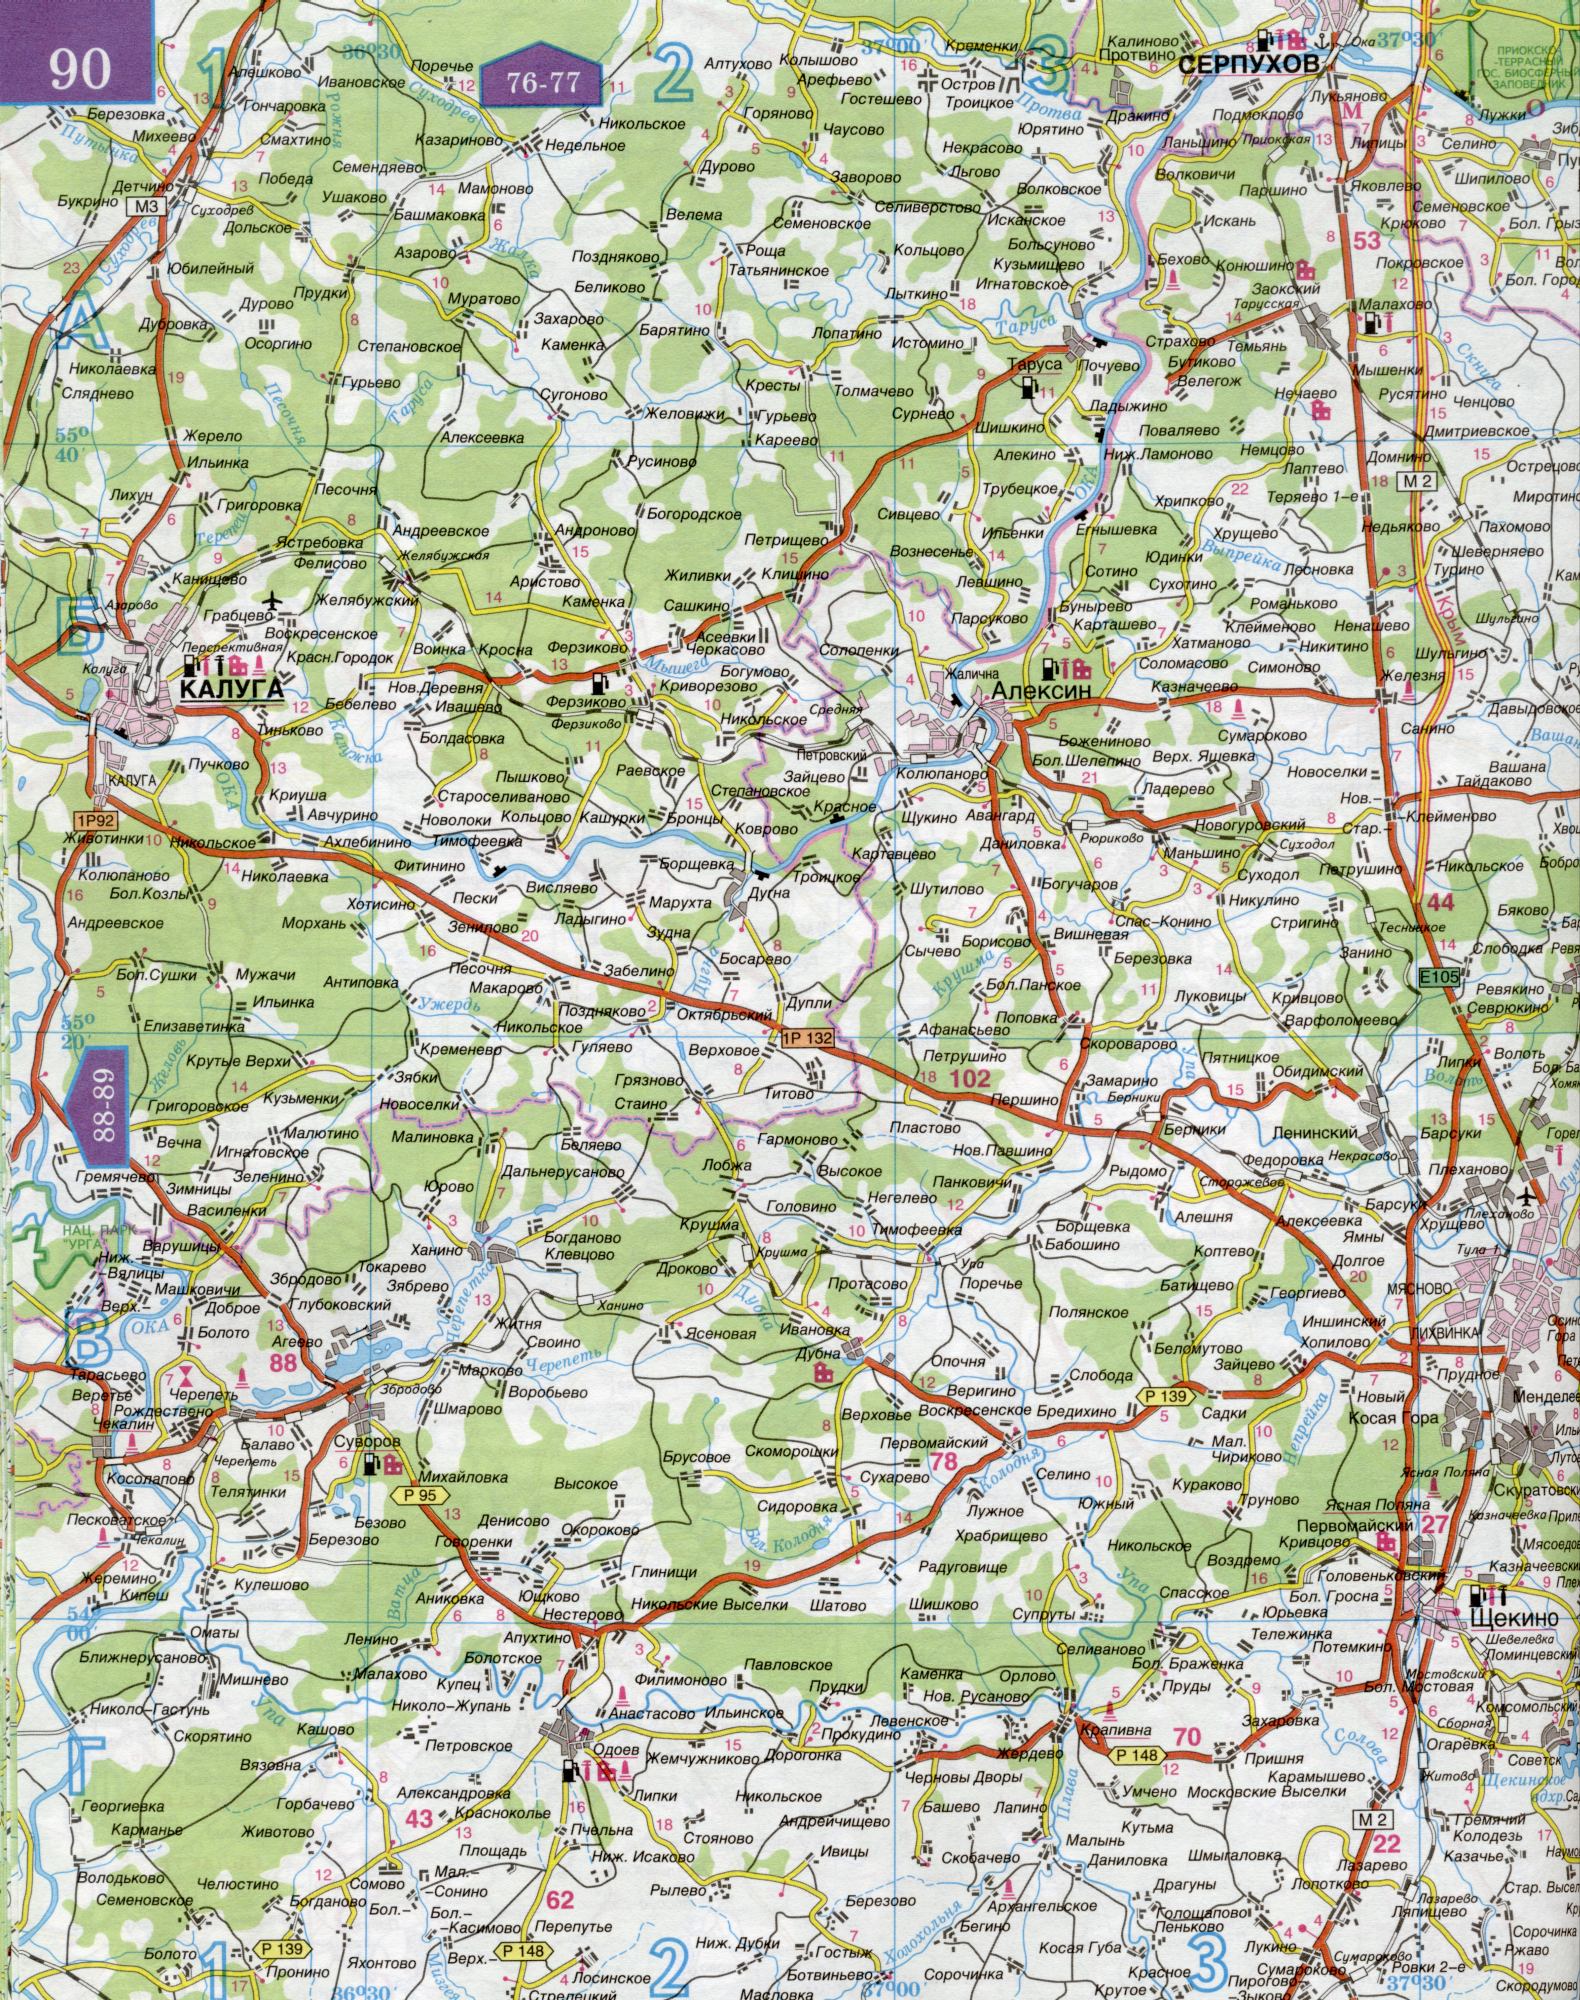 Карта Калужской области 1см=5км. Карта автомобильных дорог Калужская область. Скачать бесплатно подробную карту , C0 - Ферзиково